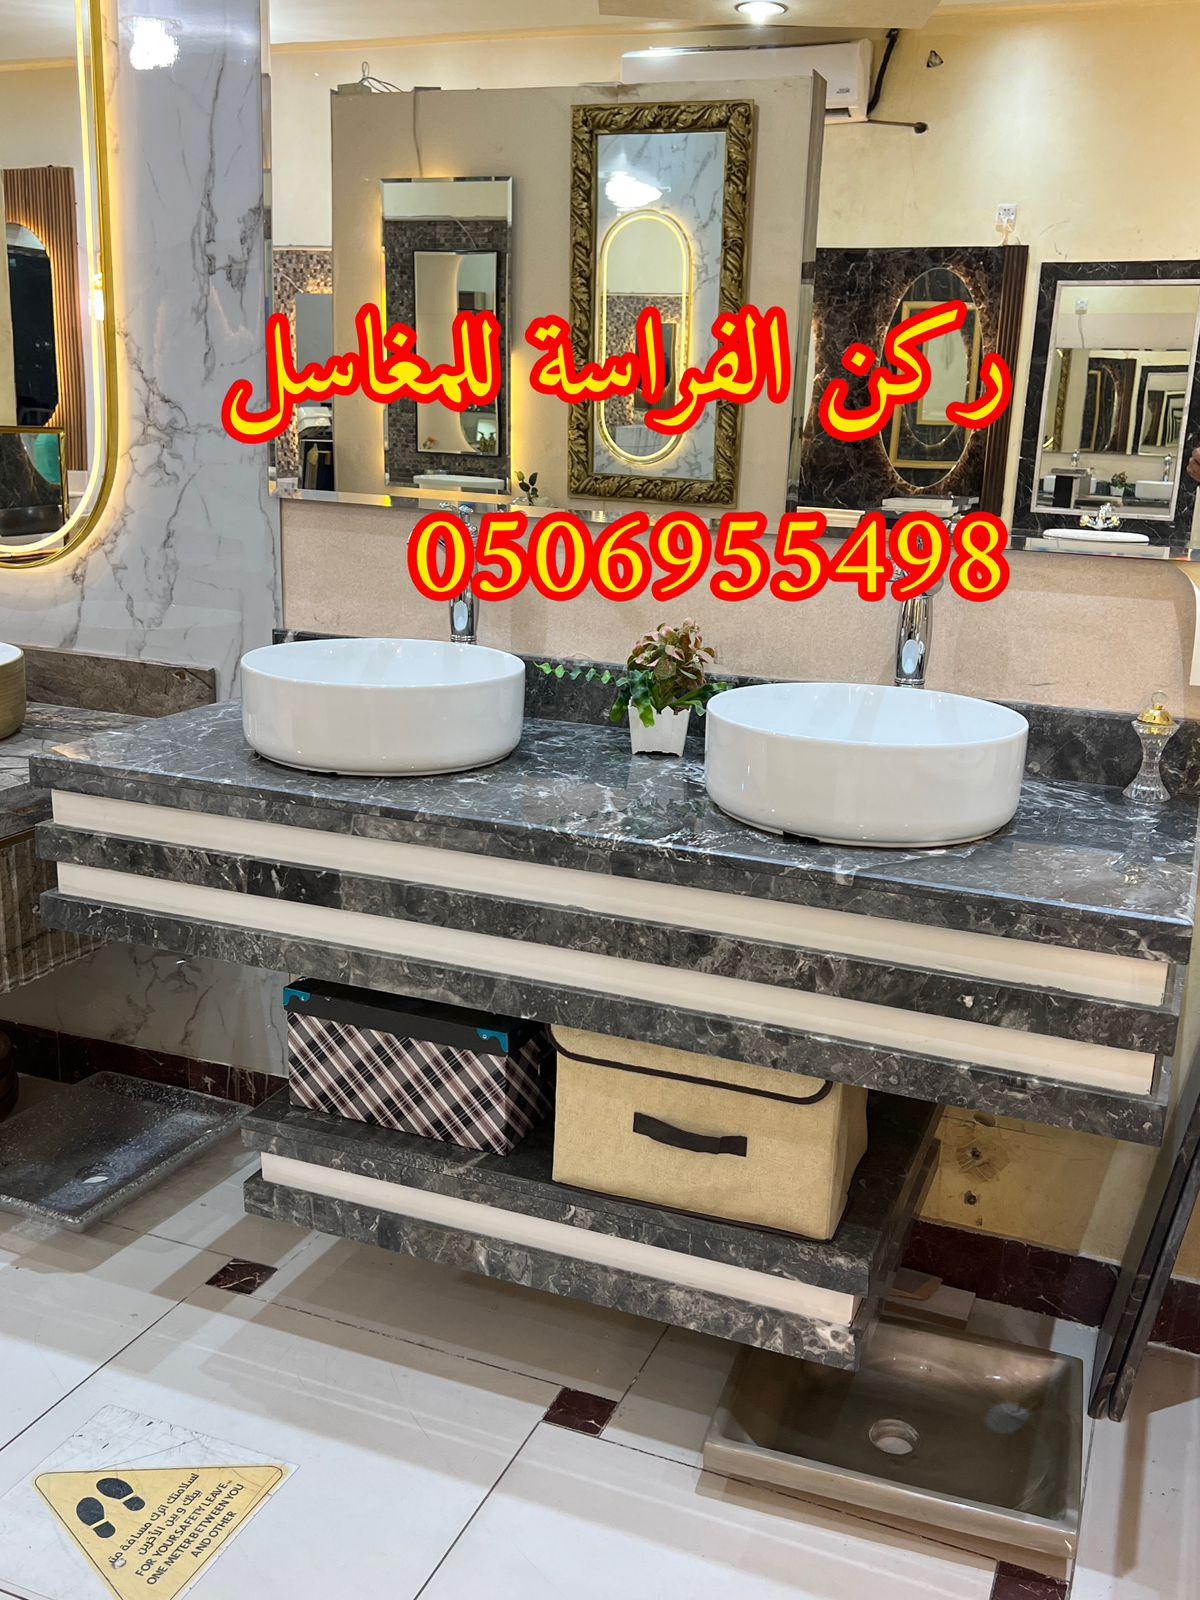 الرياض - تفصيل احواض مغاسل رخام في الرياض,0506955498 206275608